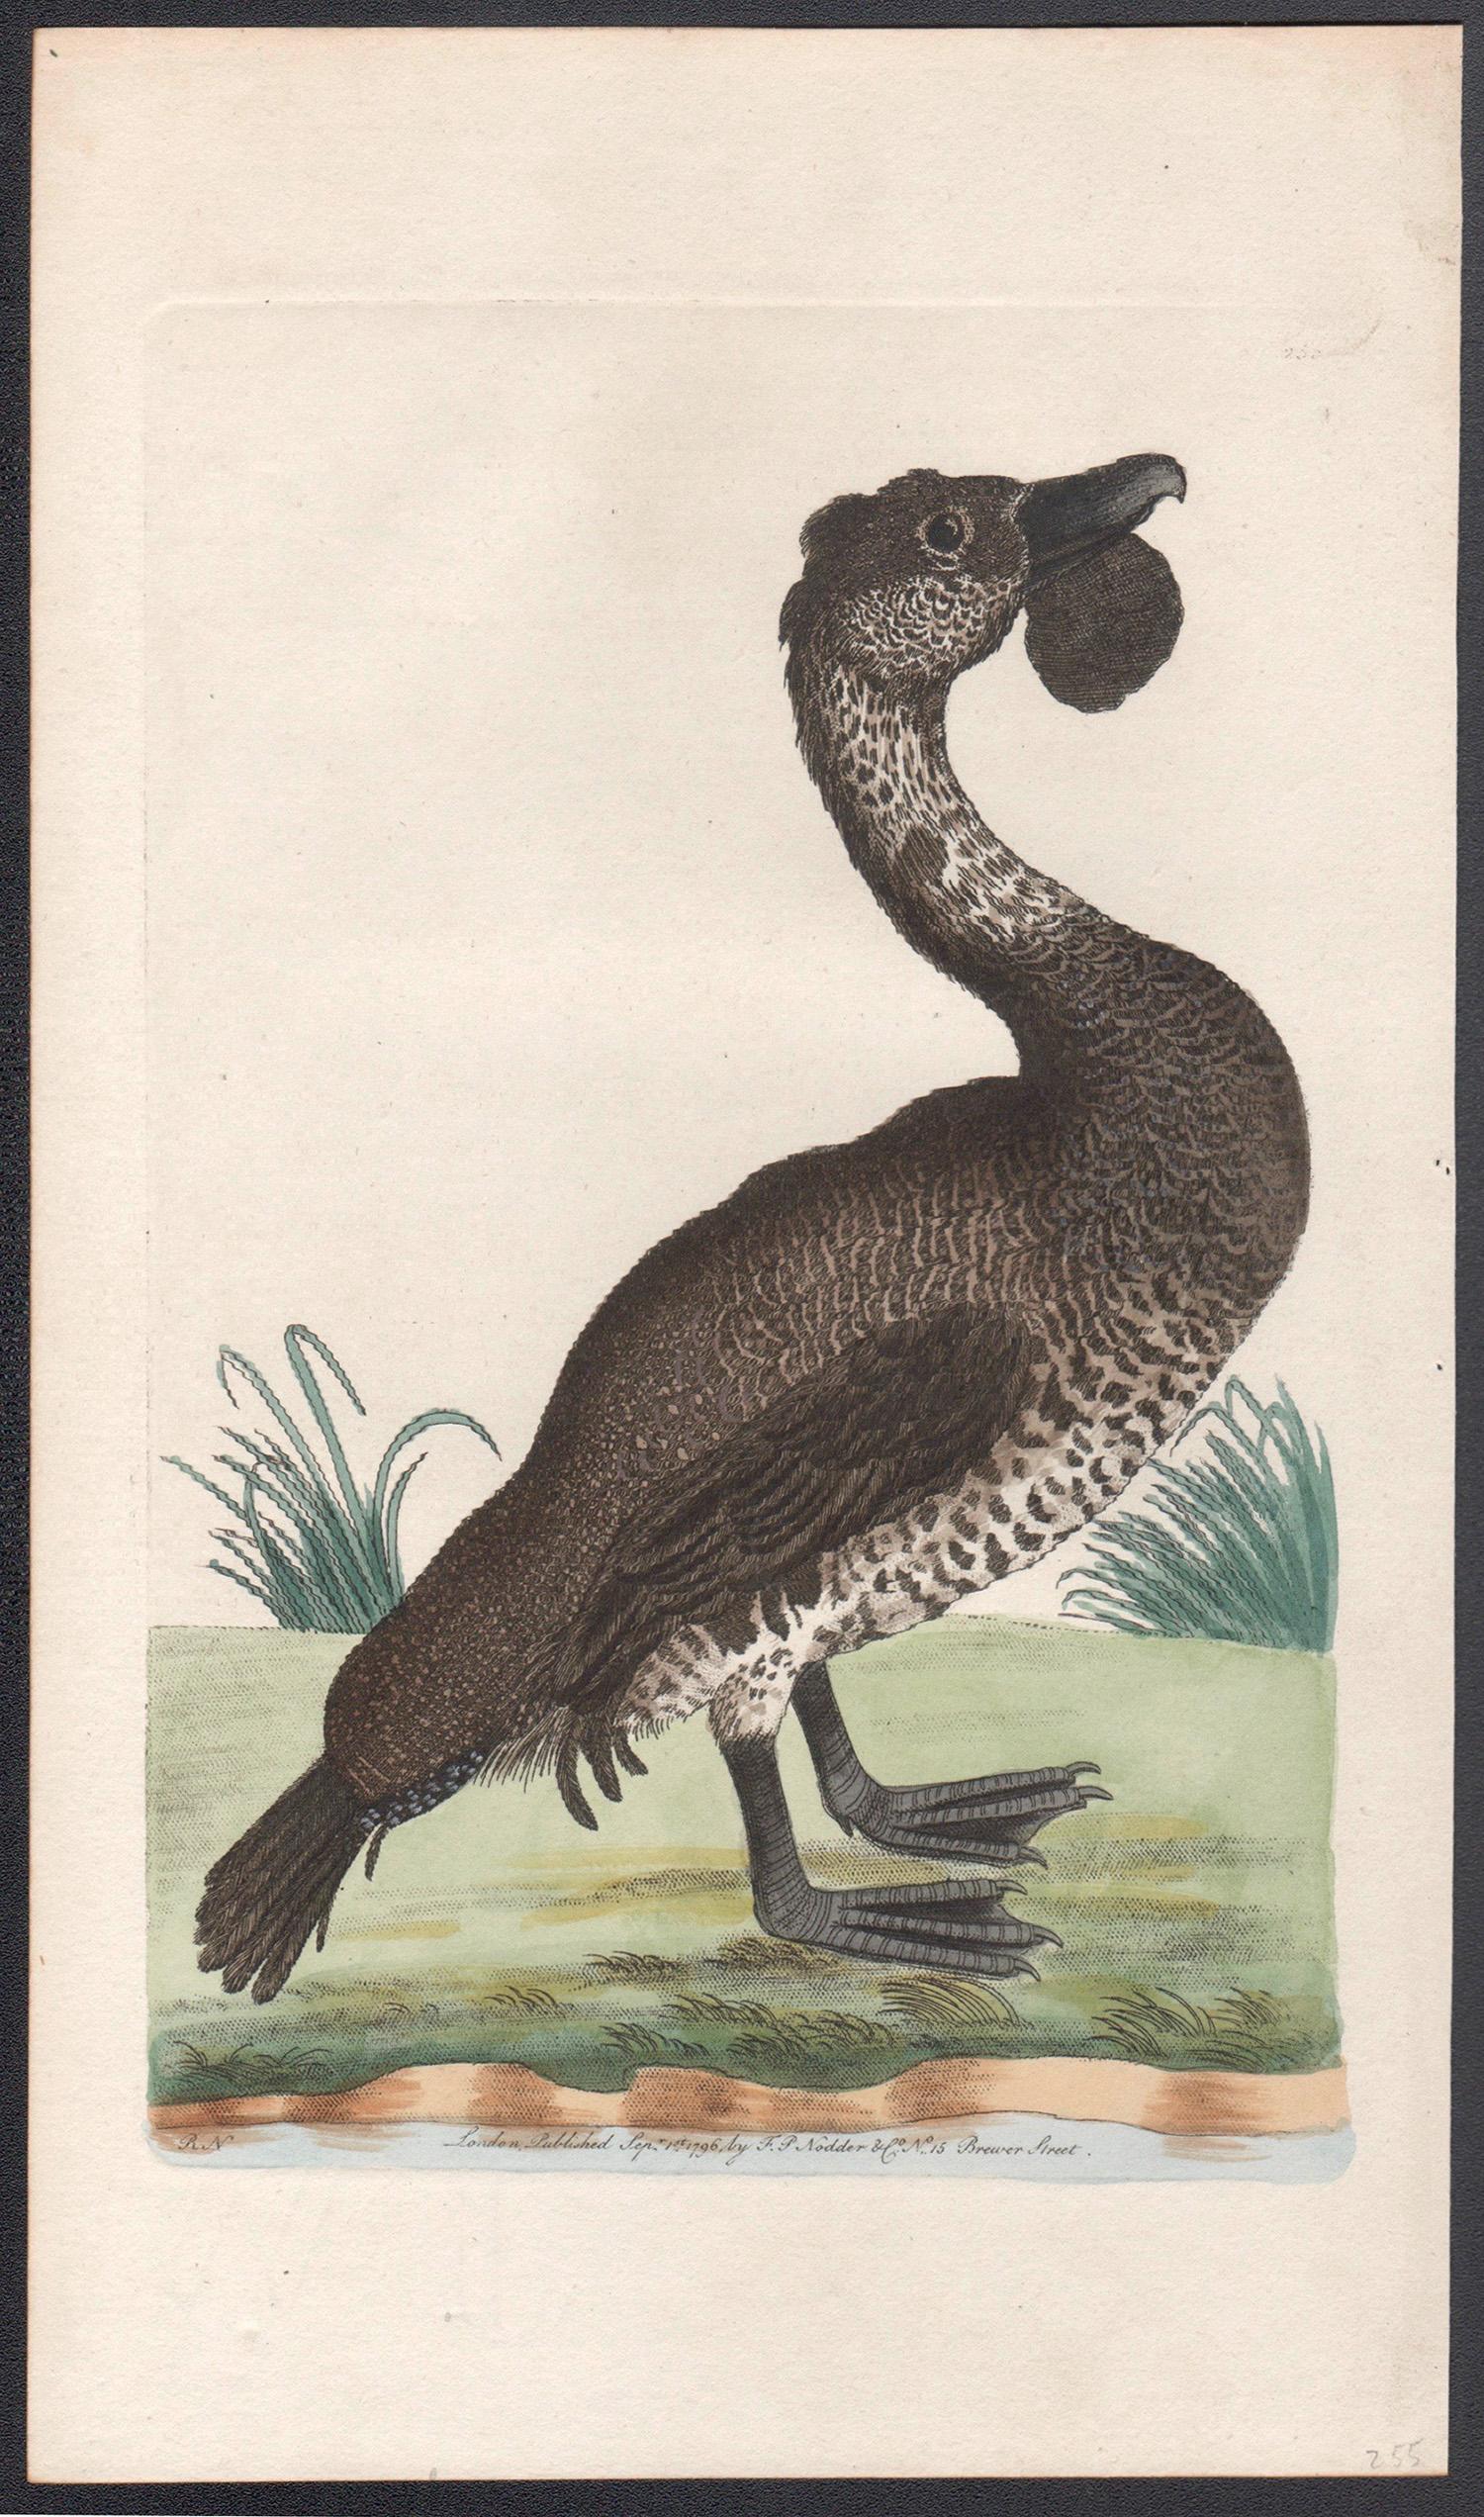 The Lobated Musk Duck, Australien, Kupferstich mit Original-Handkolorierung, 1795 – Print von Richard Polydore Nodder